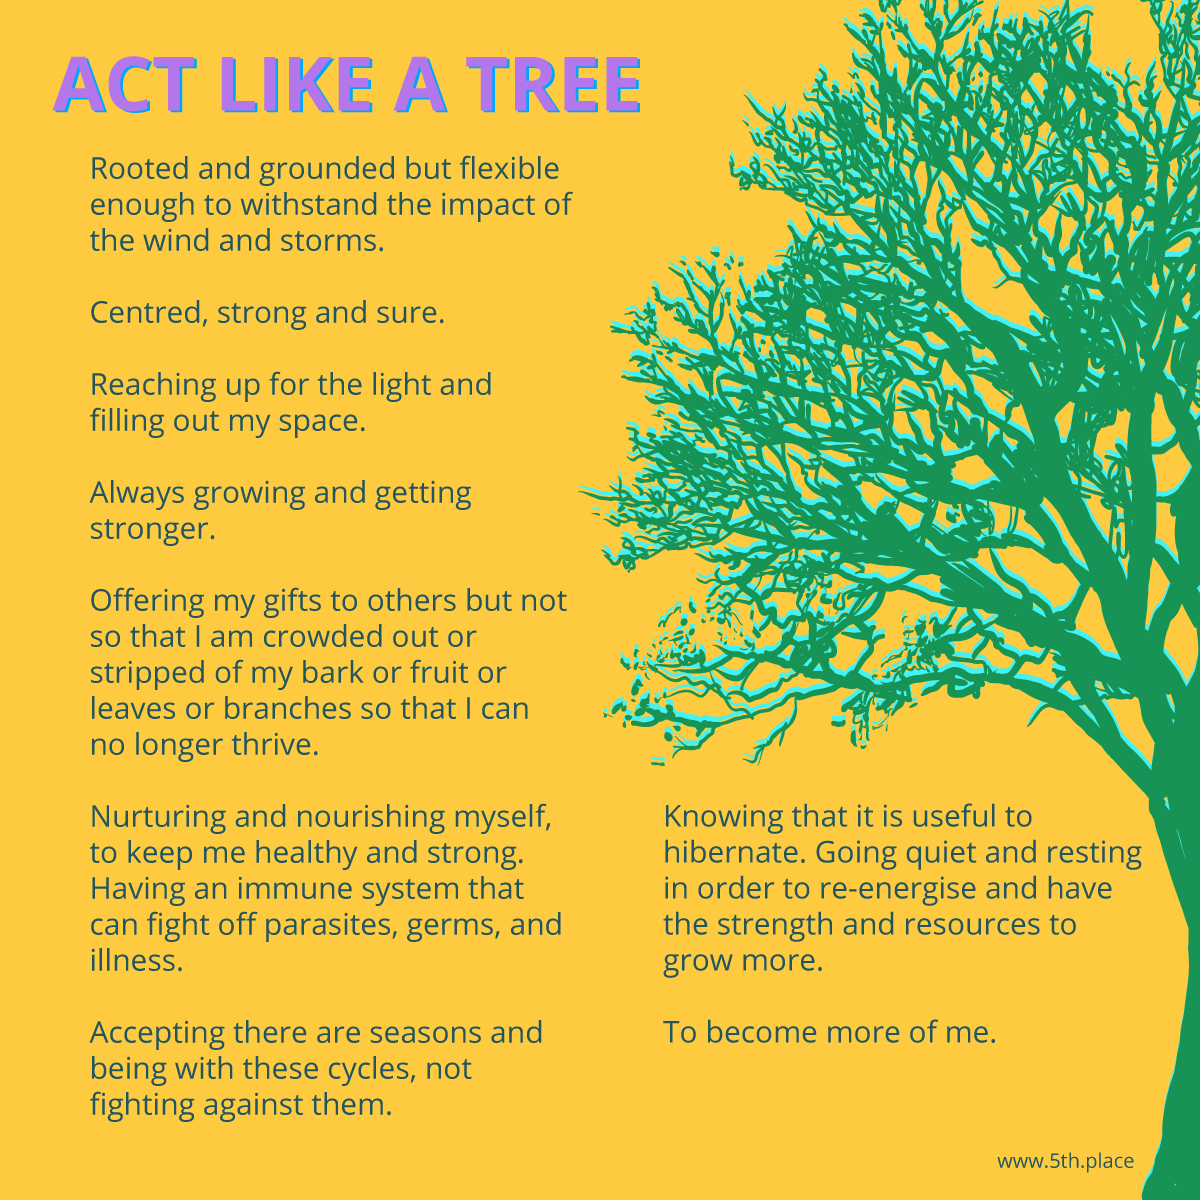 Act like a tree principles